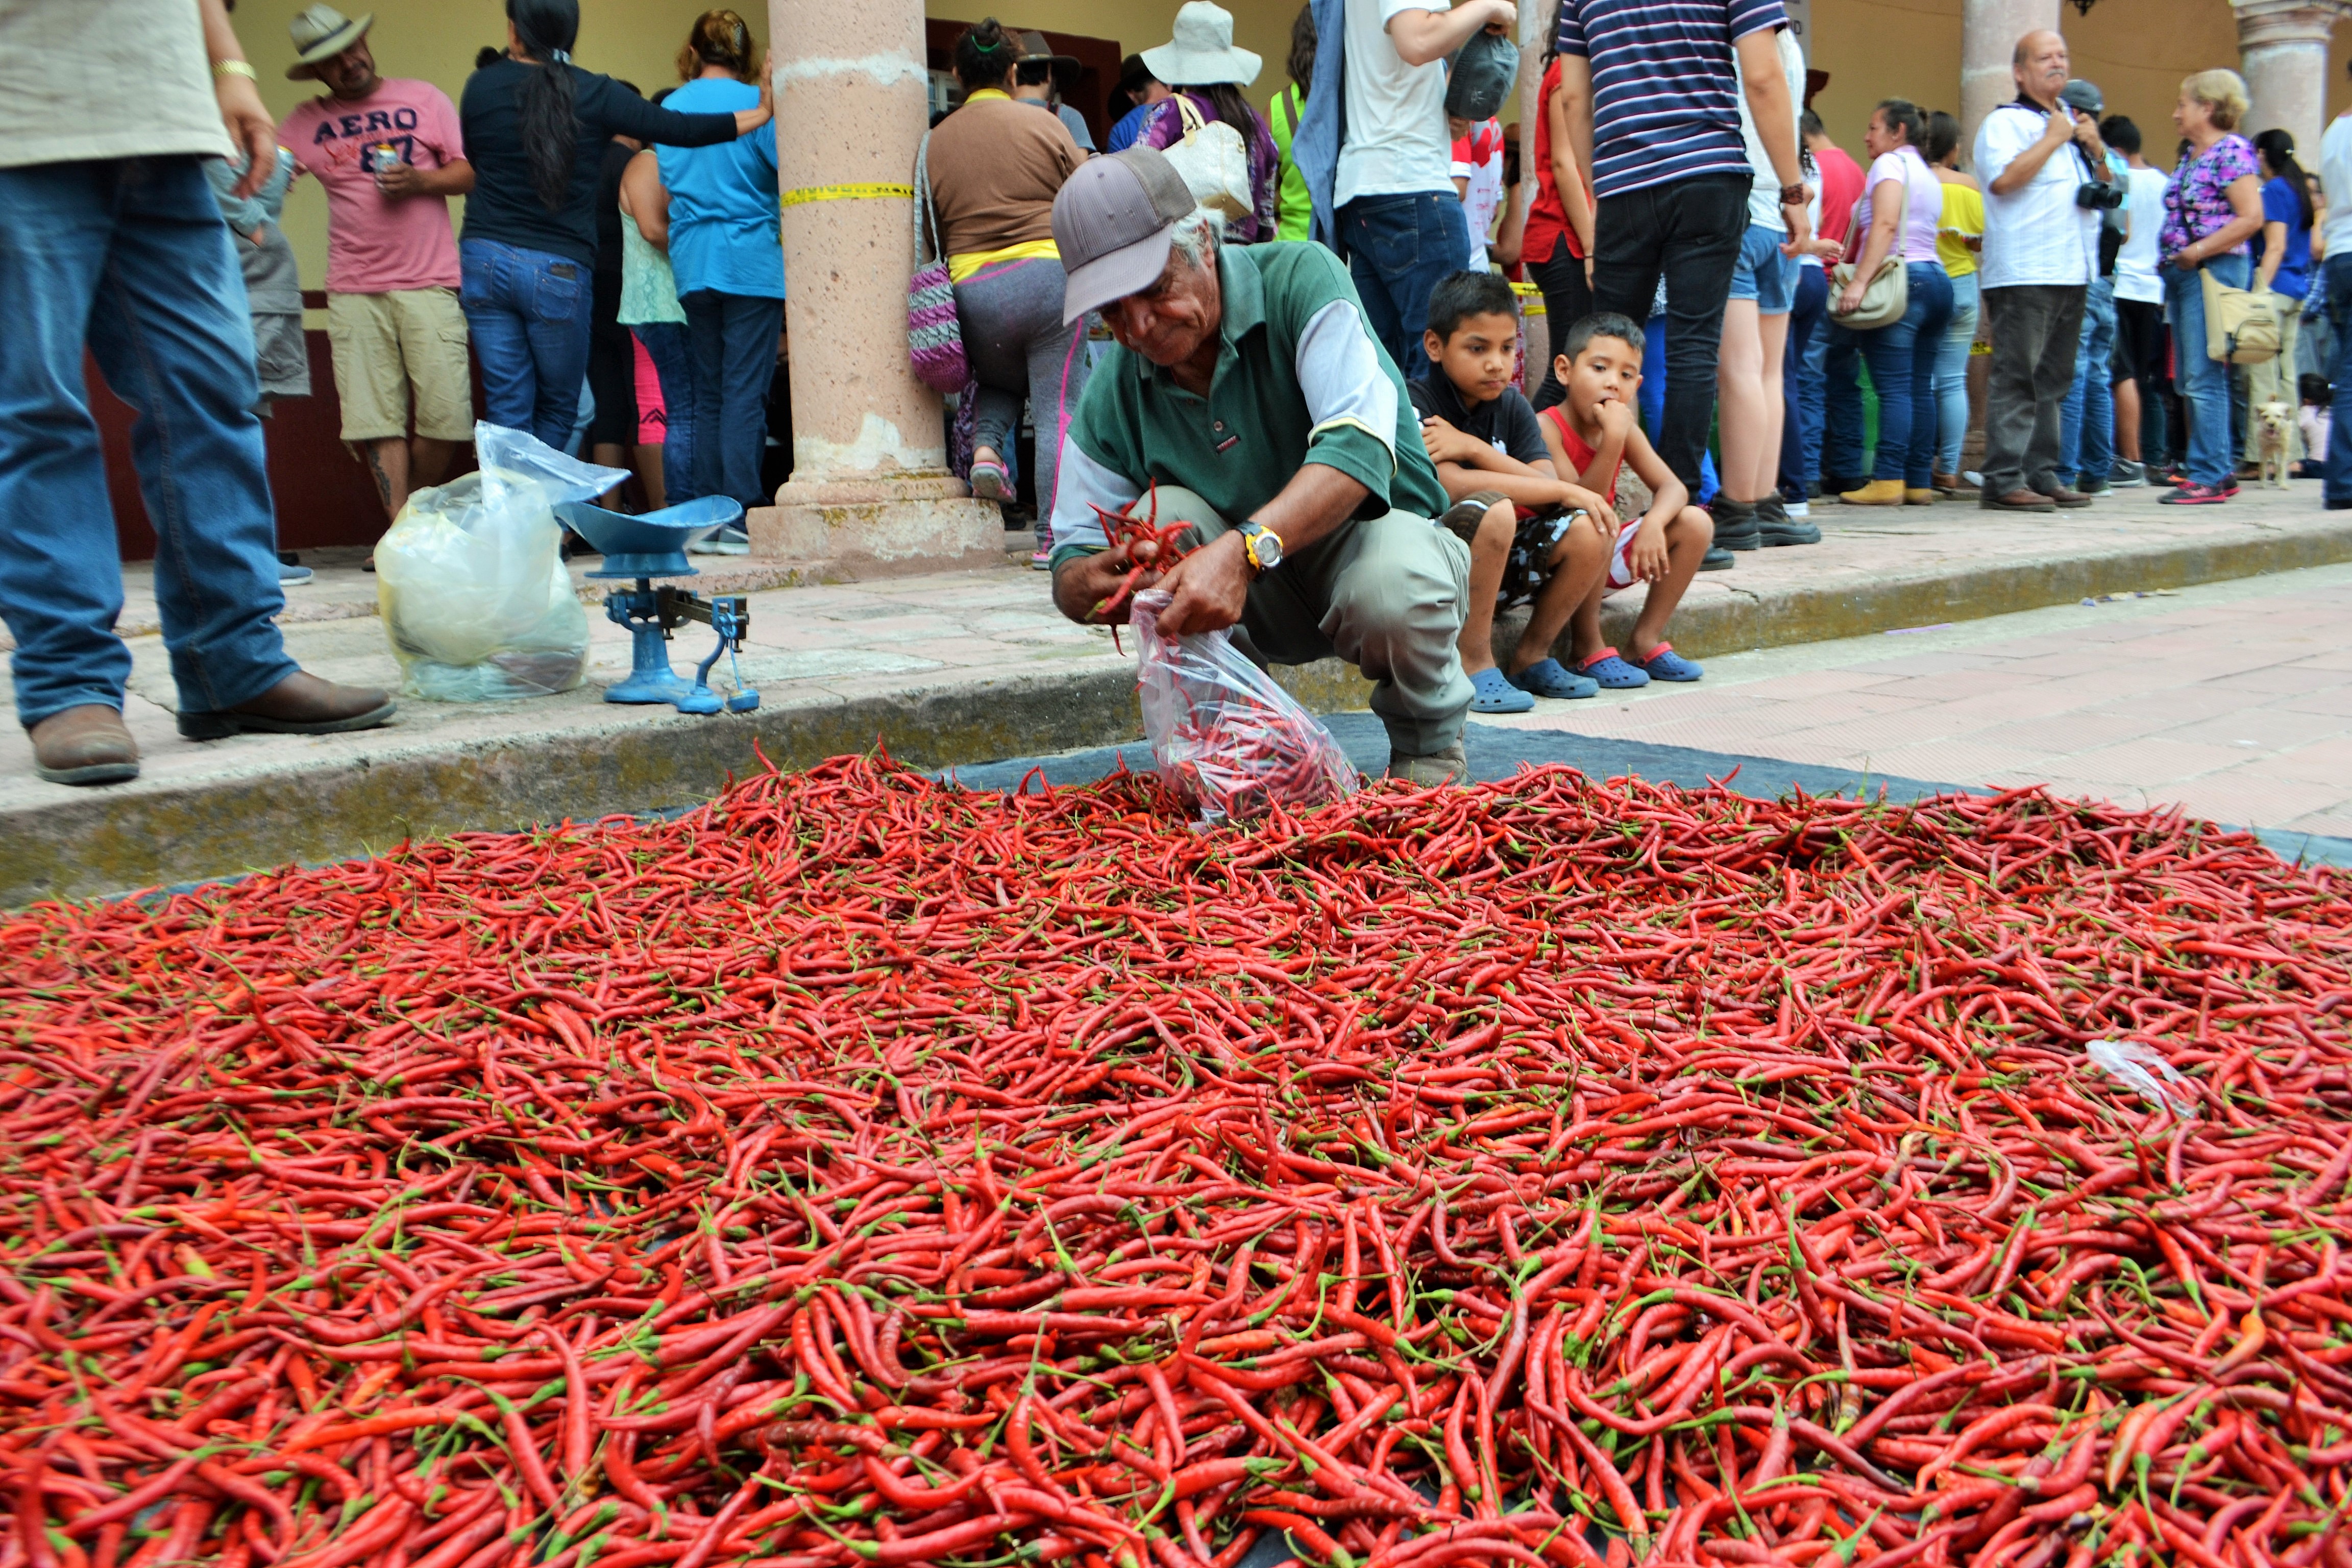 Foto: Comerciante de chile Yahualica | Eduardo Castellanos